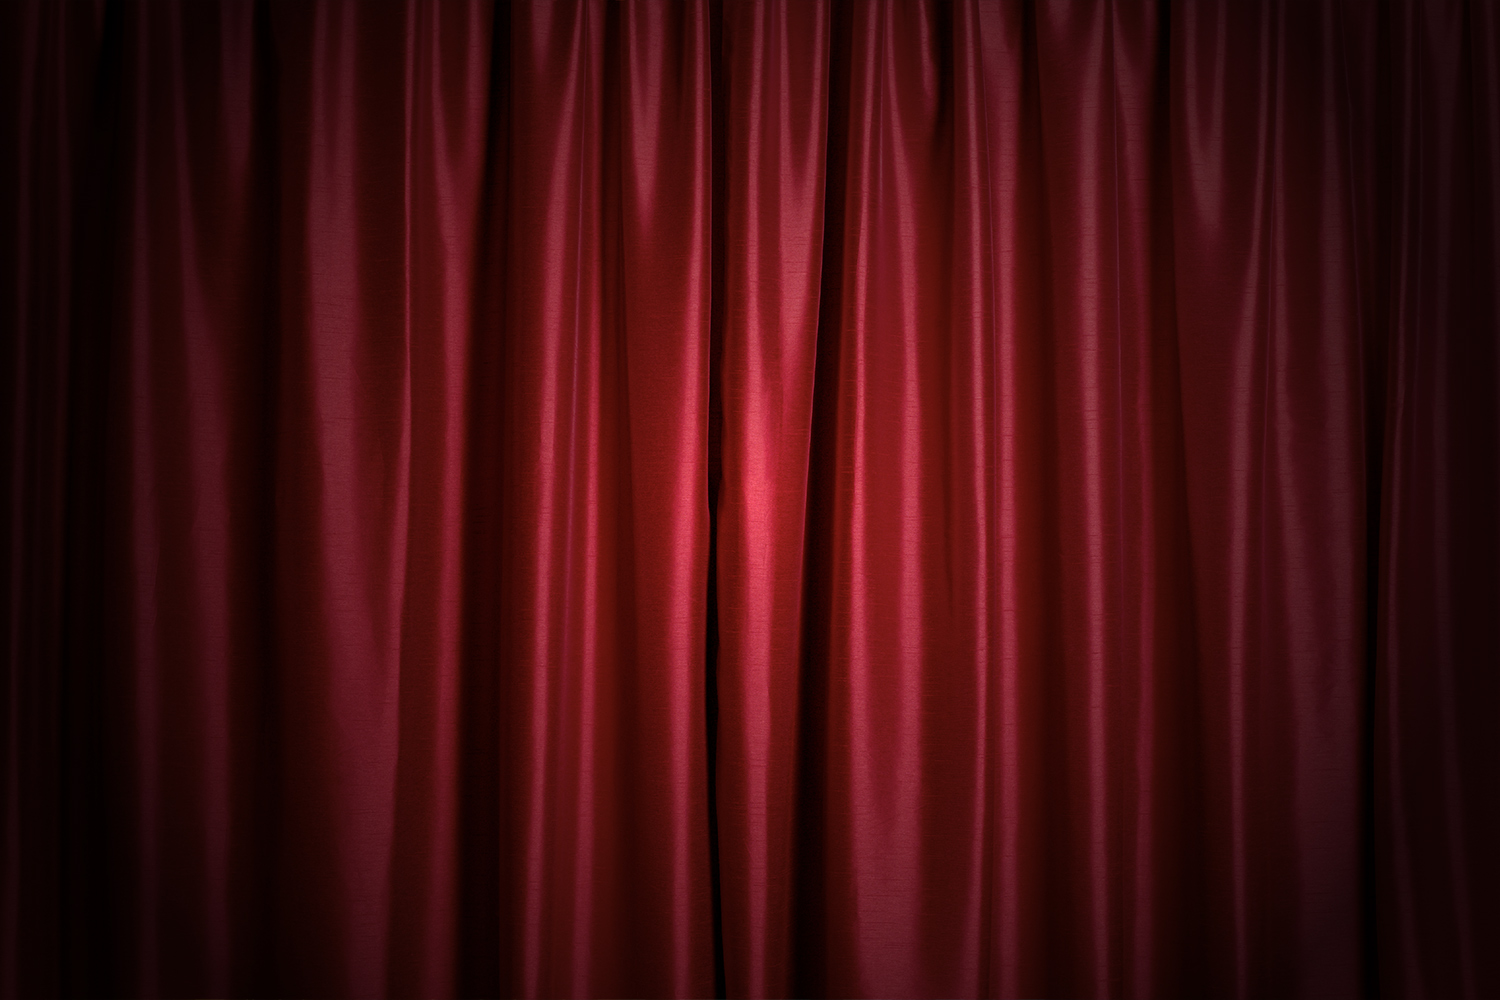 Theatre curtains